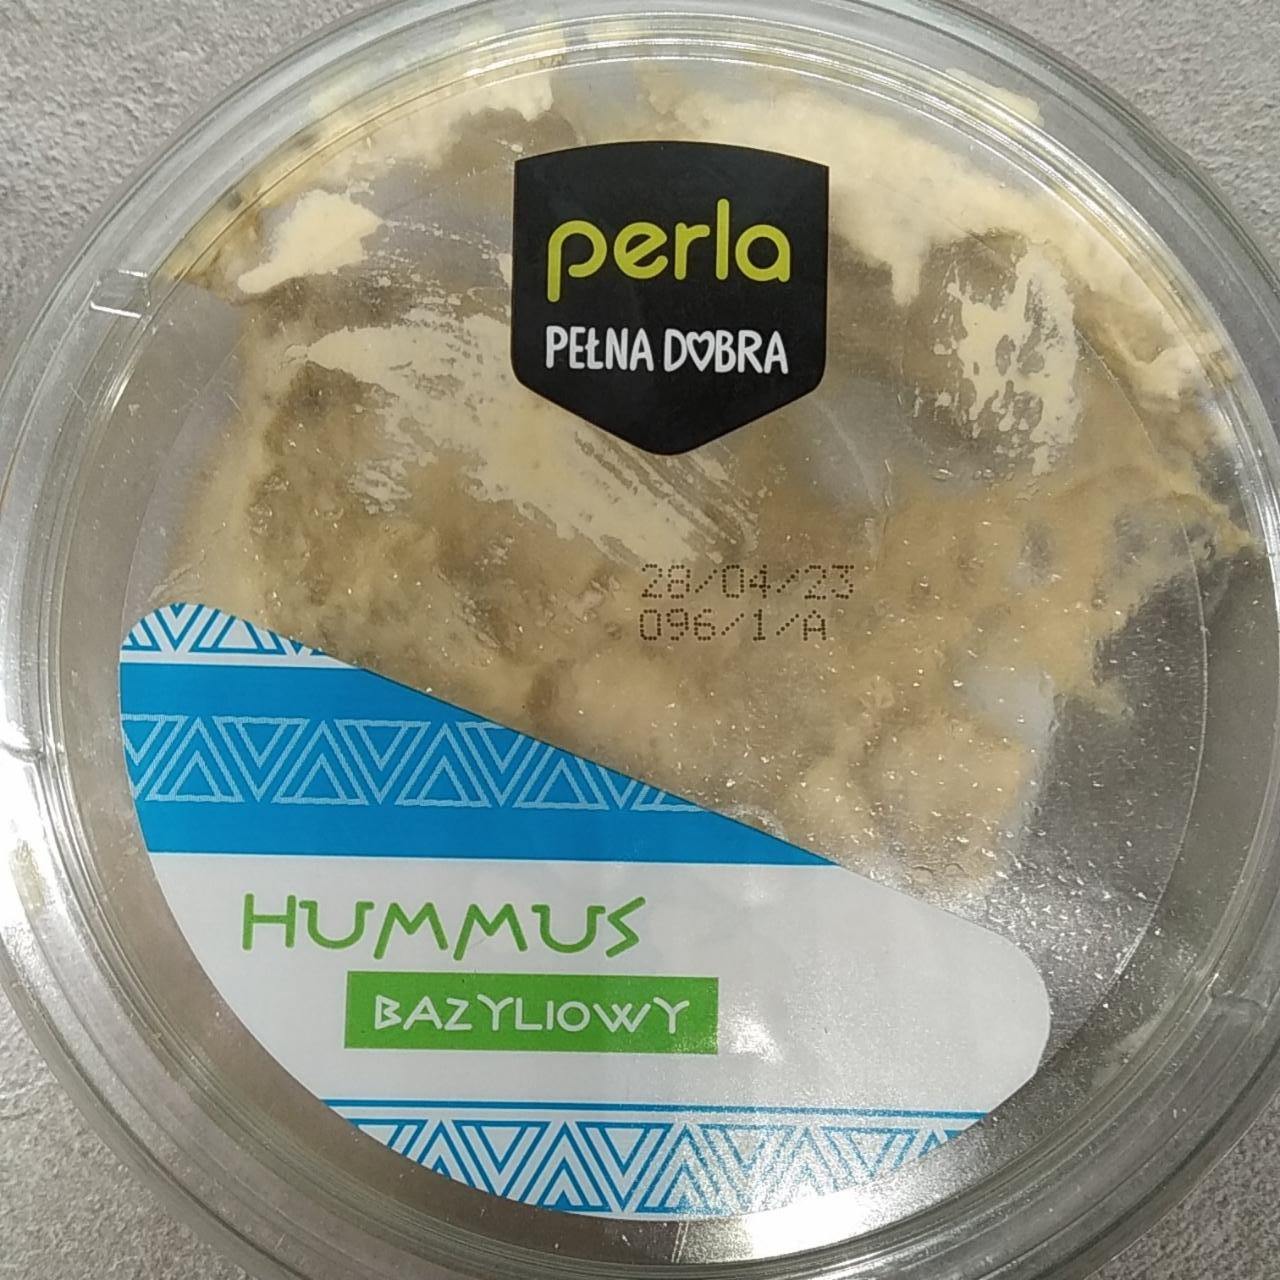 Zdjęcia - Hummus Bazyliowy Perla